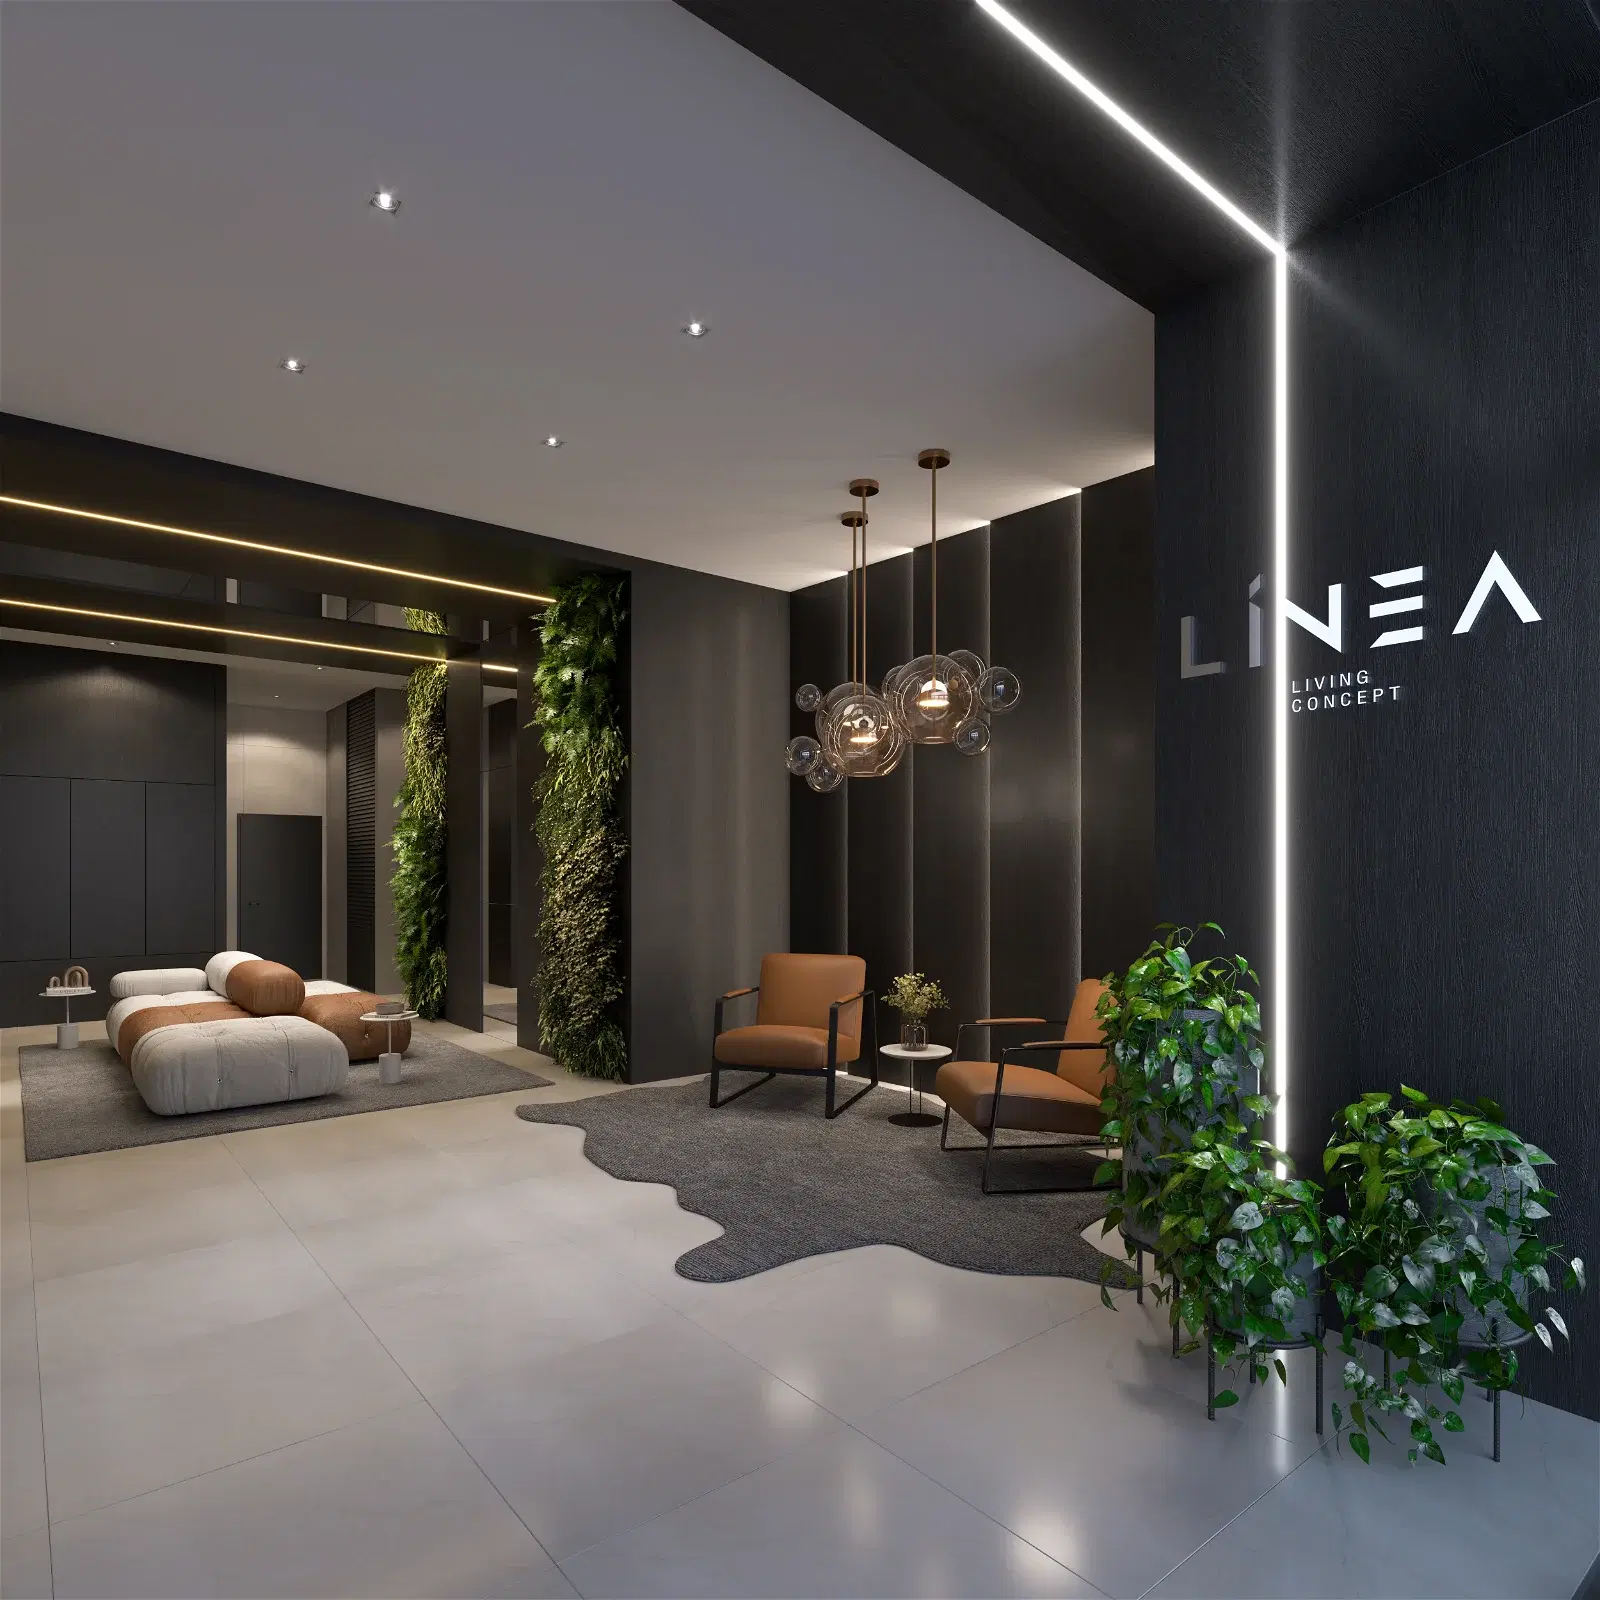 Preço de duplex no Linea Living concept